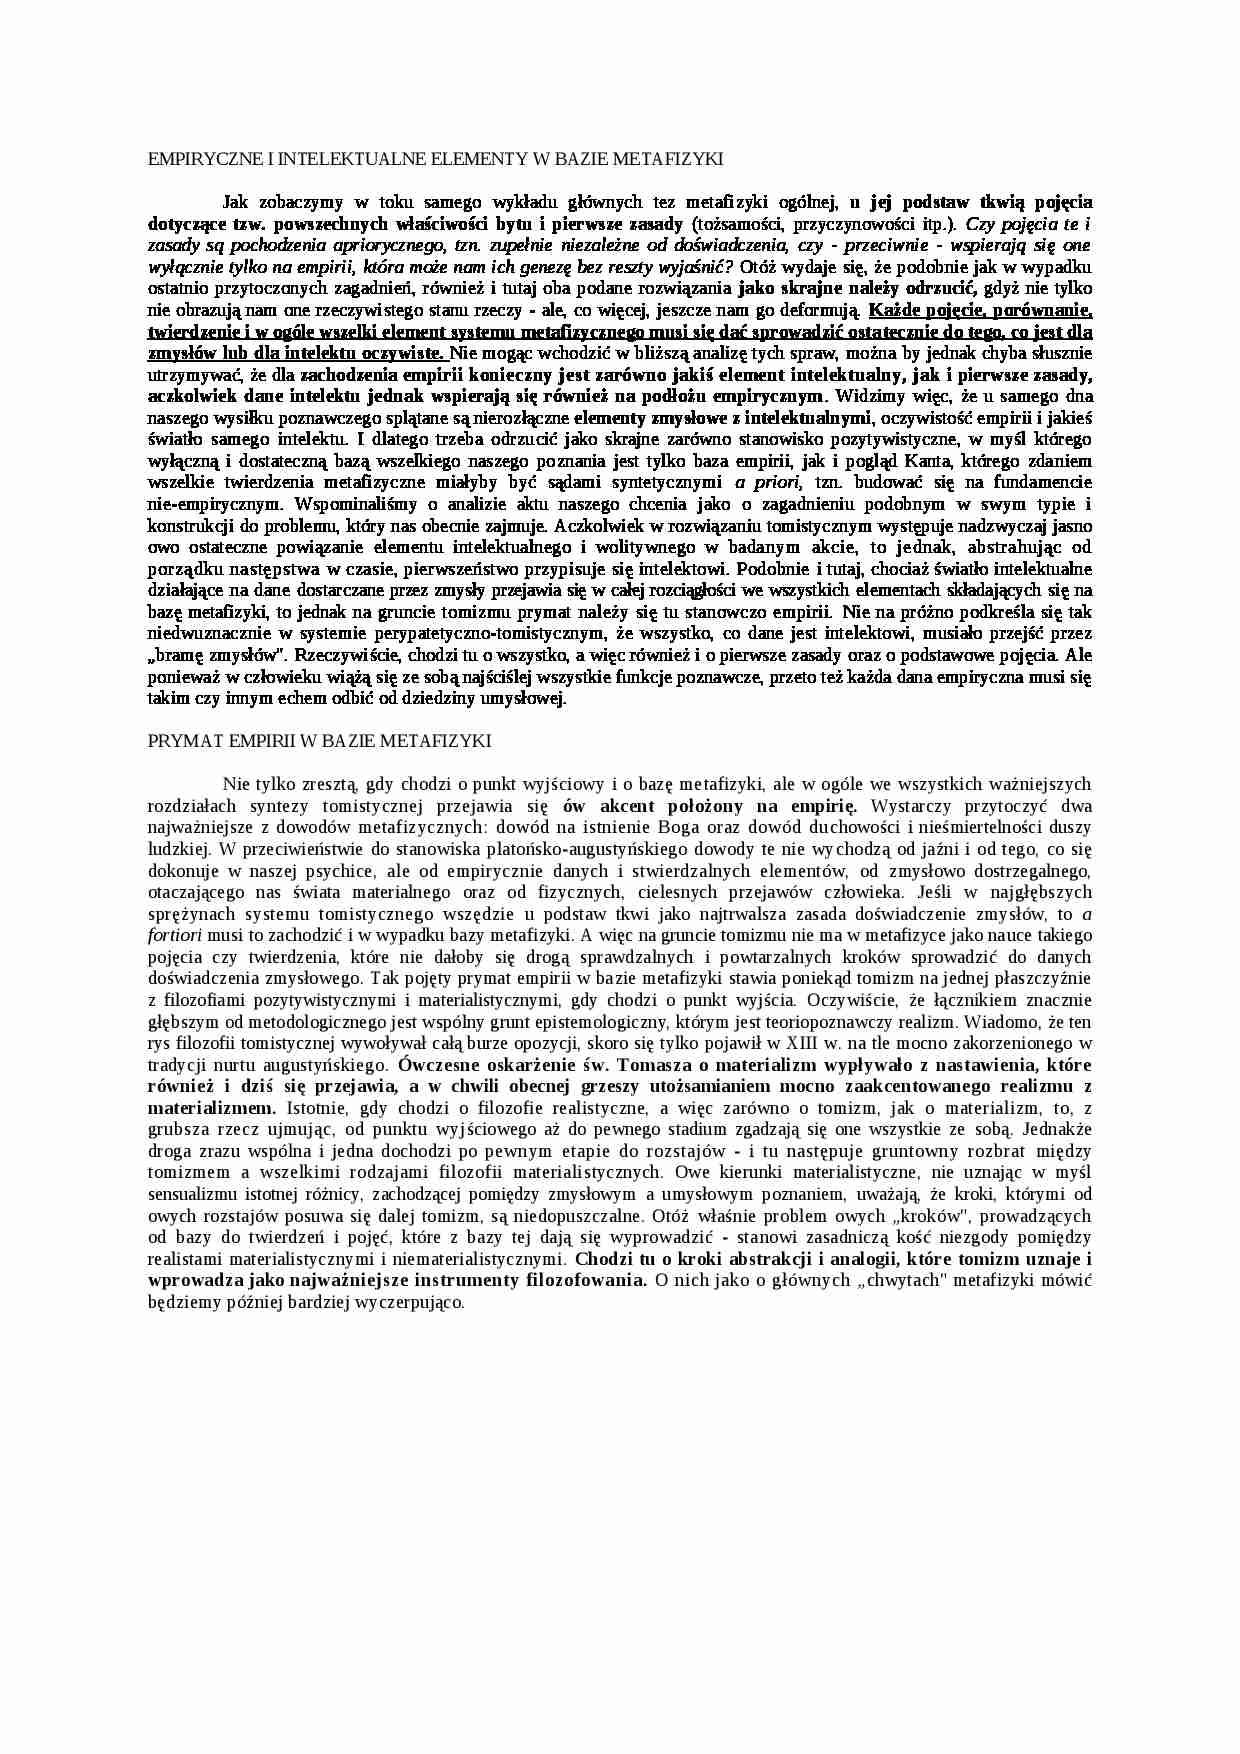 Empiryczne i intelektualne elementy w bazie metafizyki - strona 1